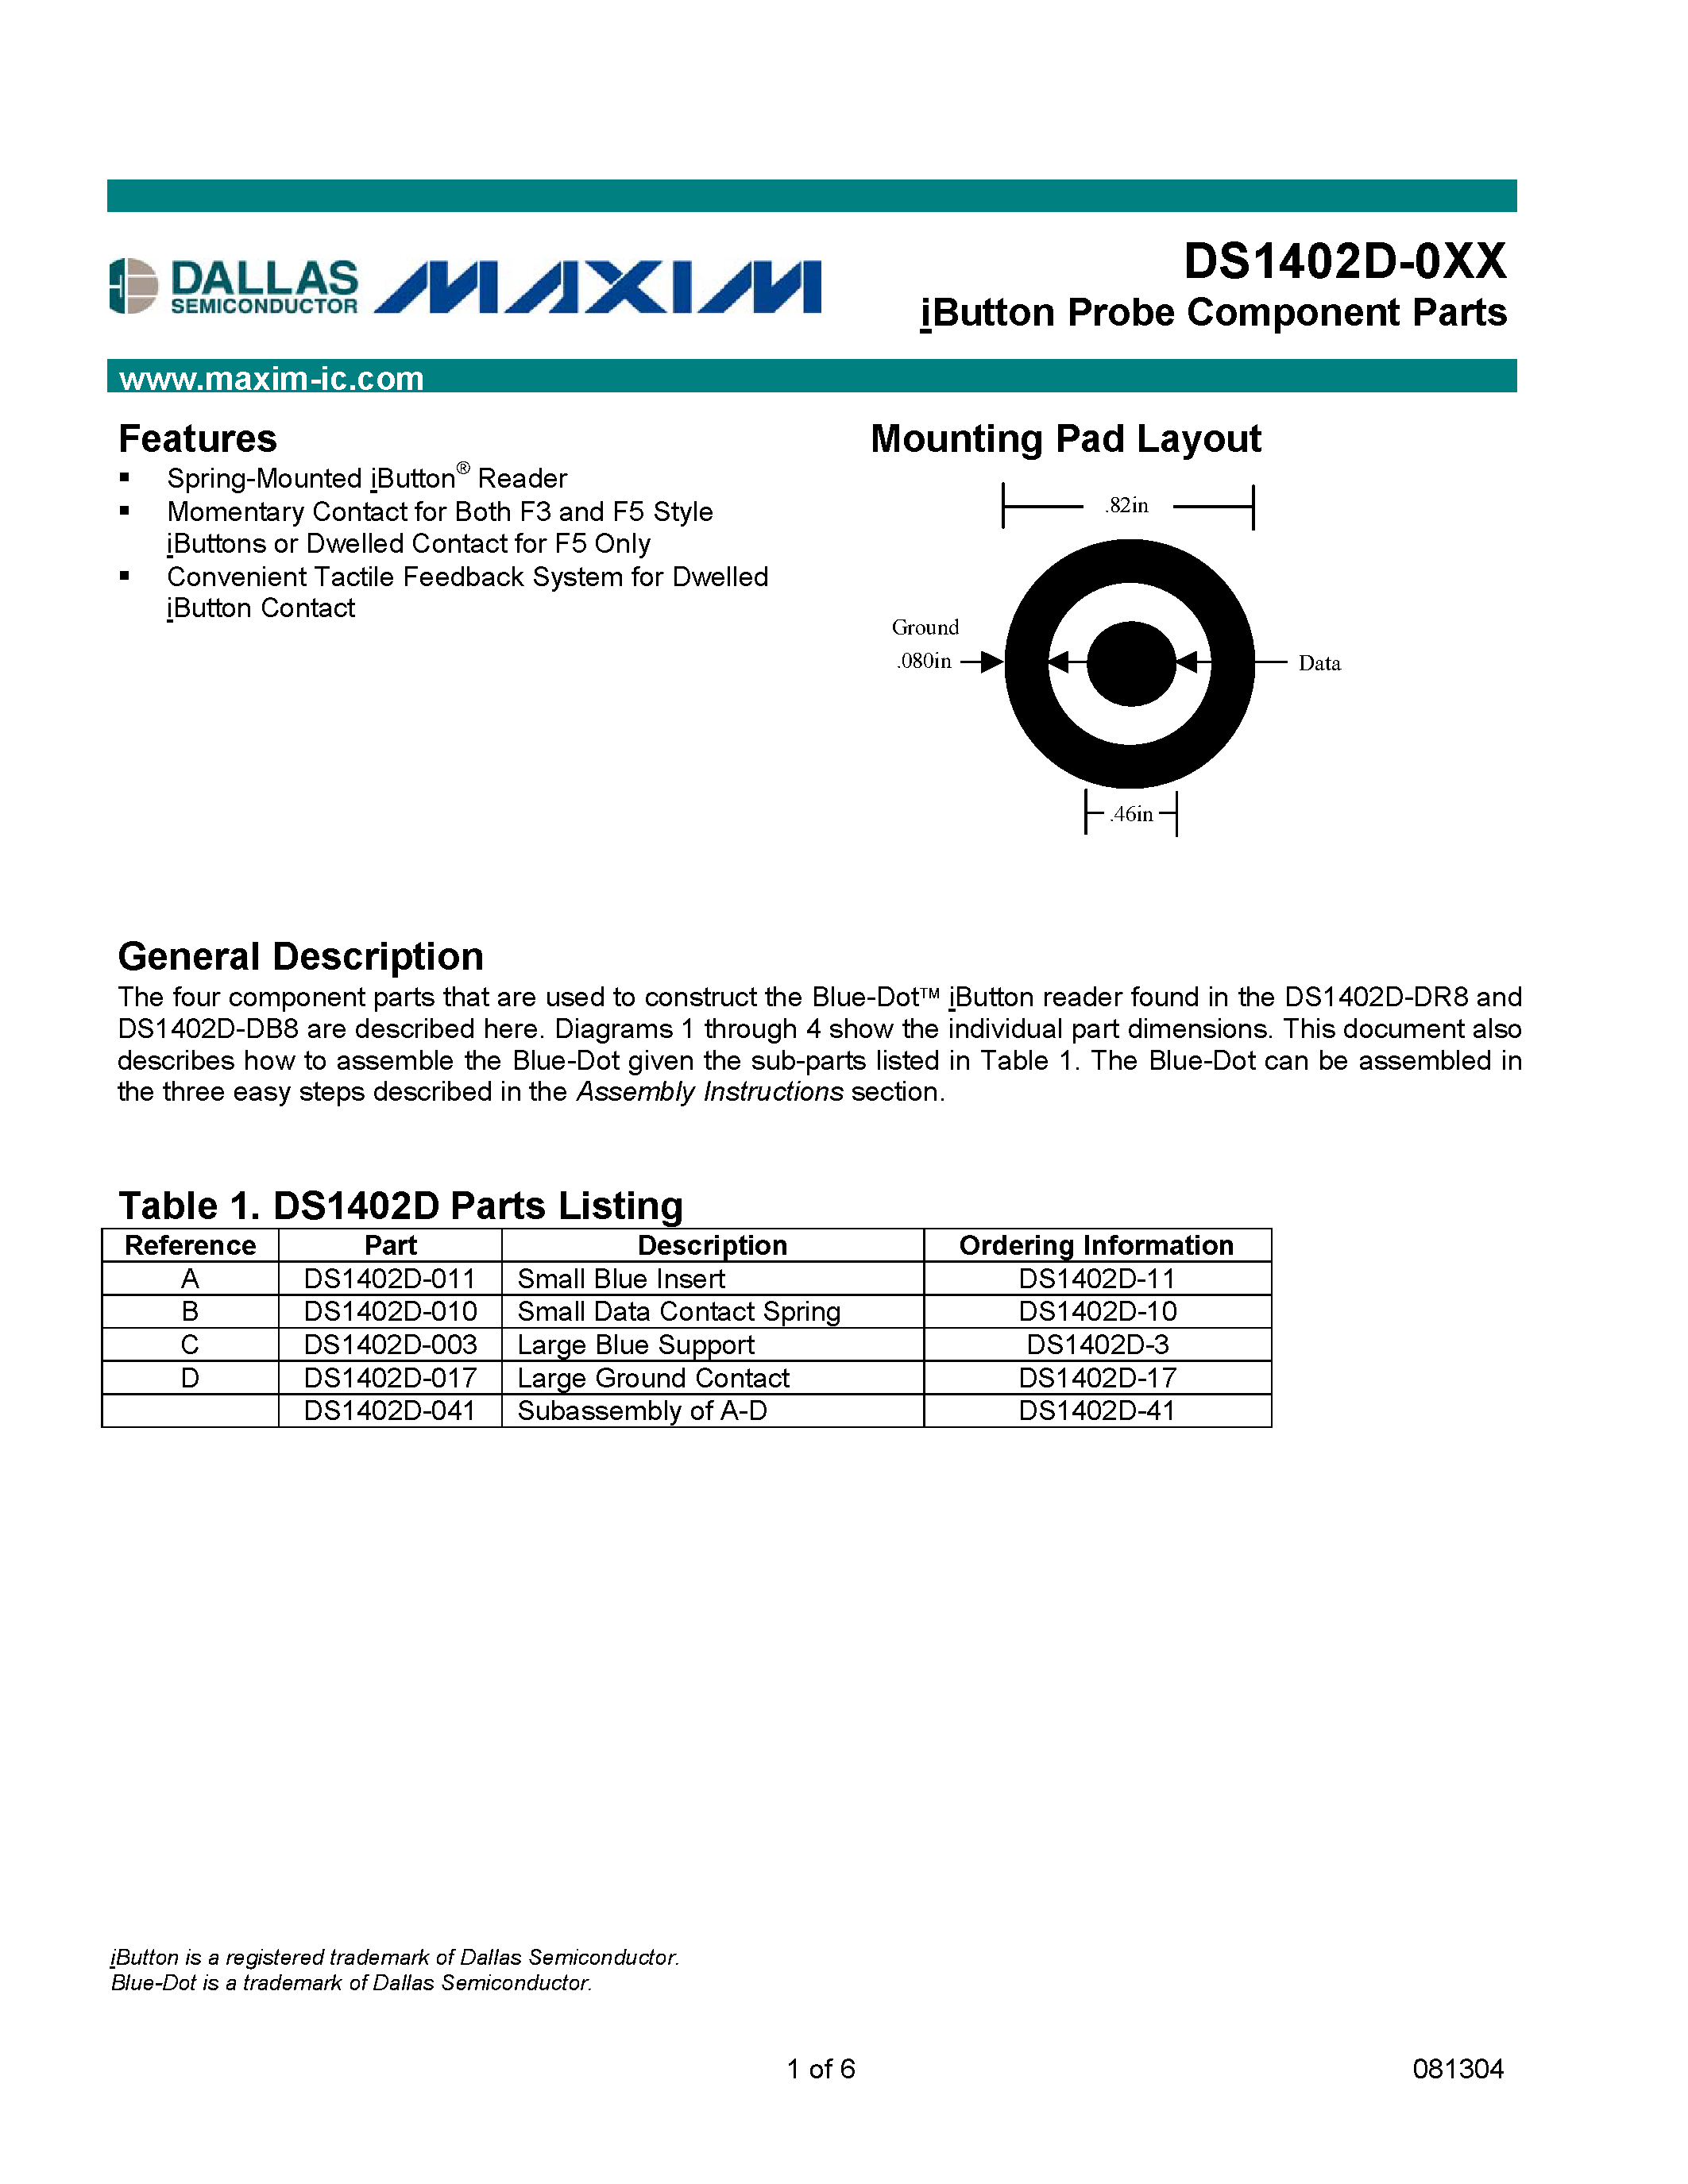 Даташит DS1402D-17 - iButton Probe Component Parts страница 1